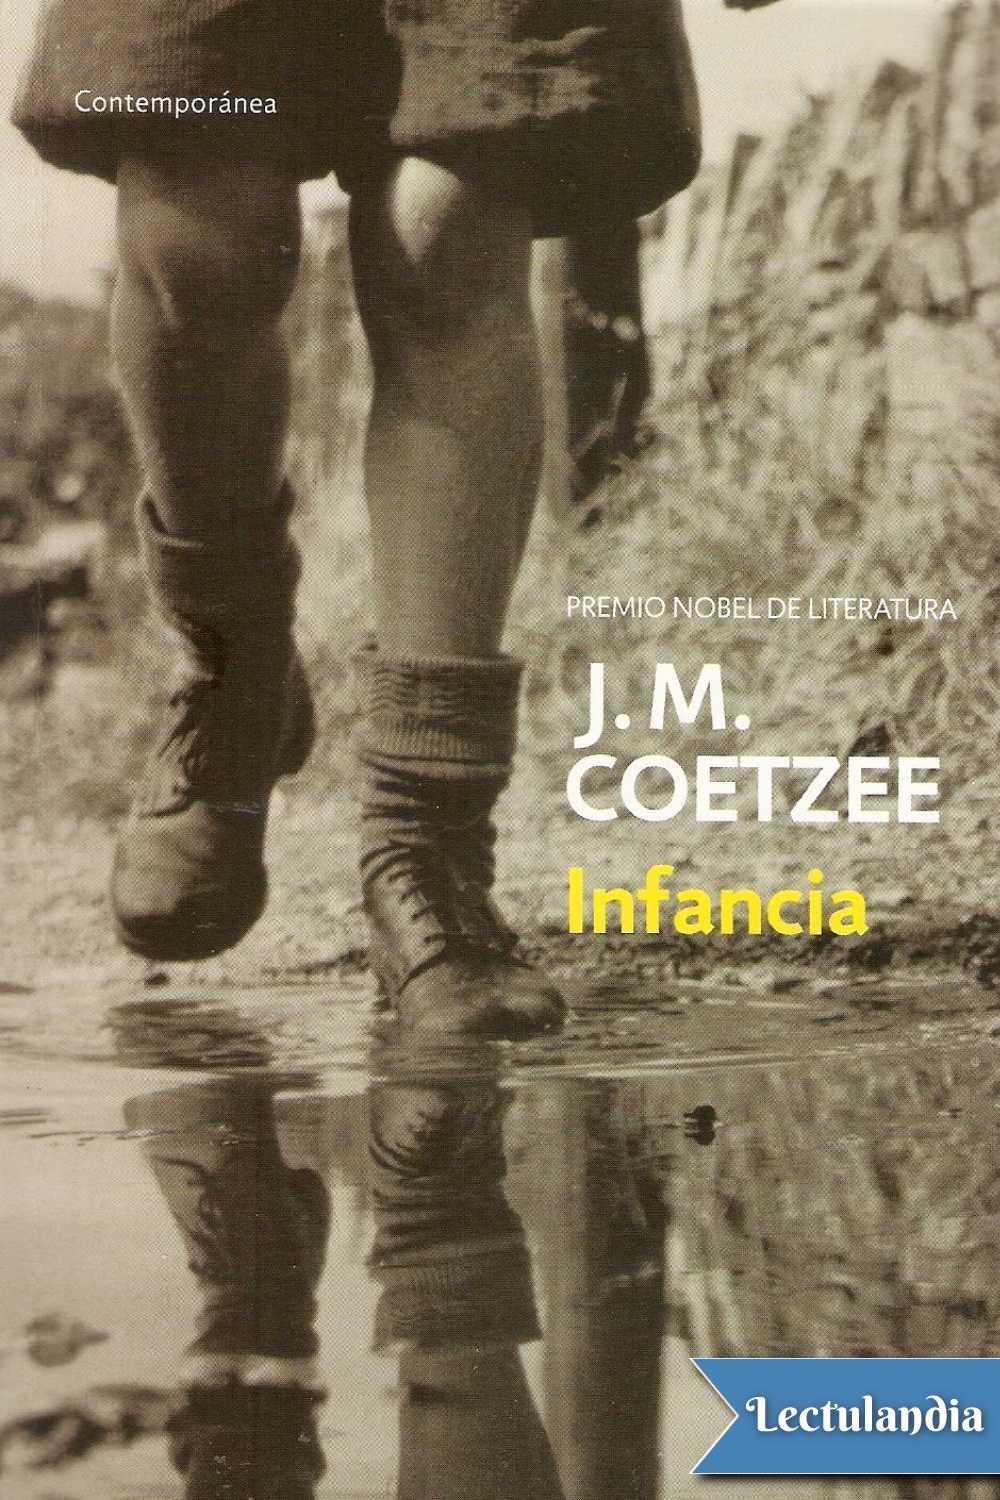 Título original Boyood John M Coetzee 1998 Traducción Juan Bonilla - photo 2